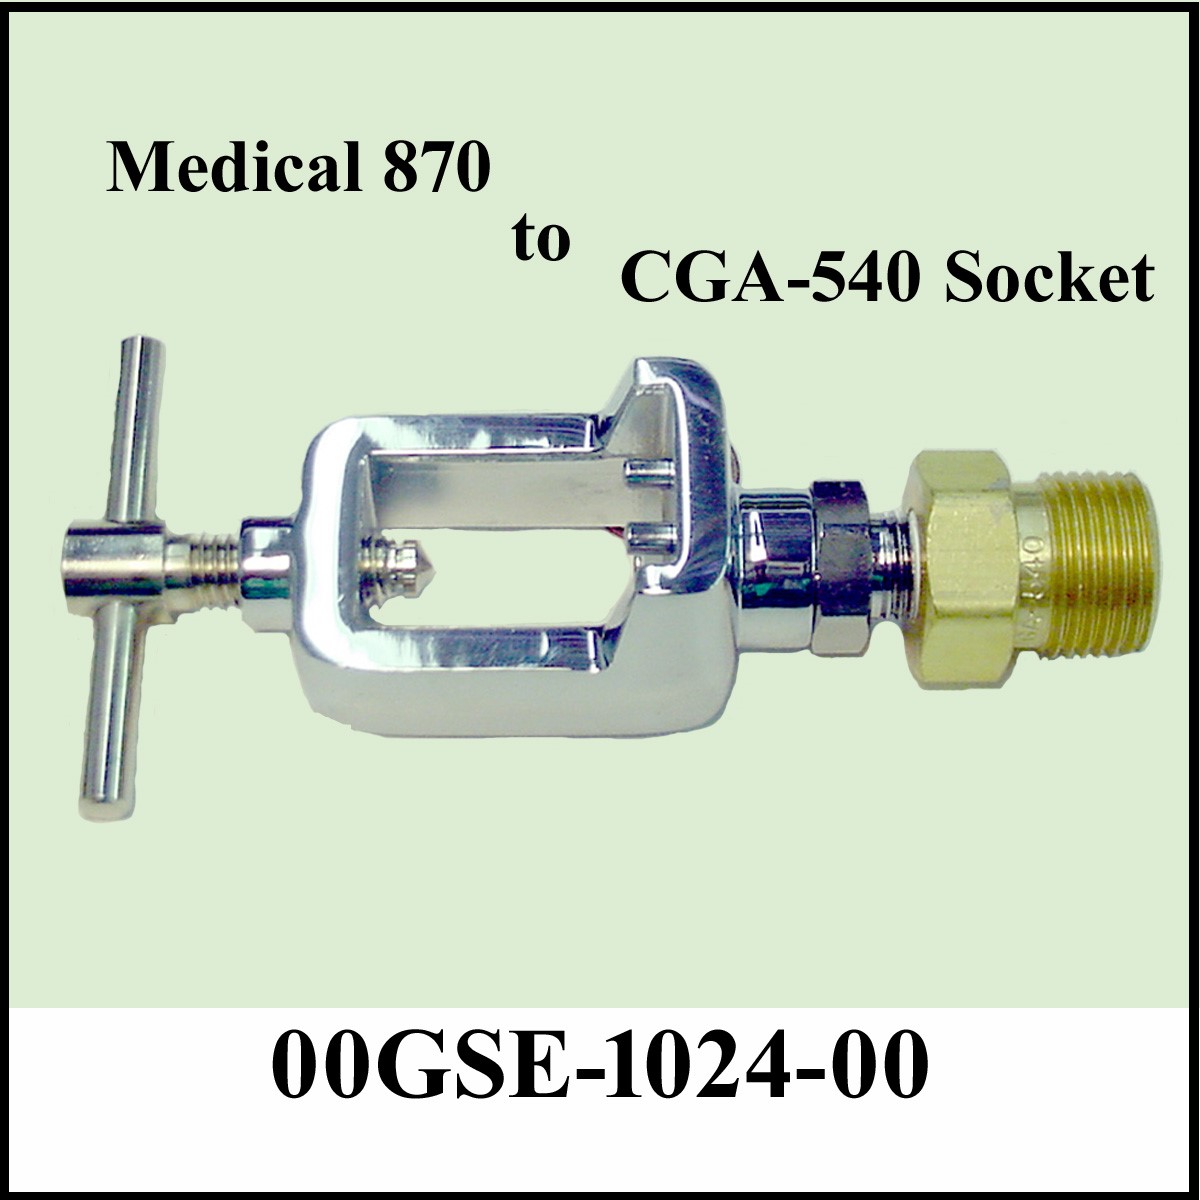 T-62 Oxygen CGA-540 Tee Adaptor Connect 2 Regulators To 1 Bottle 